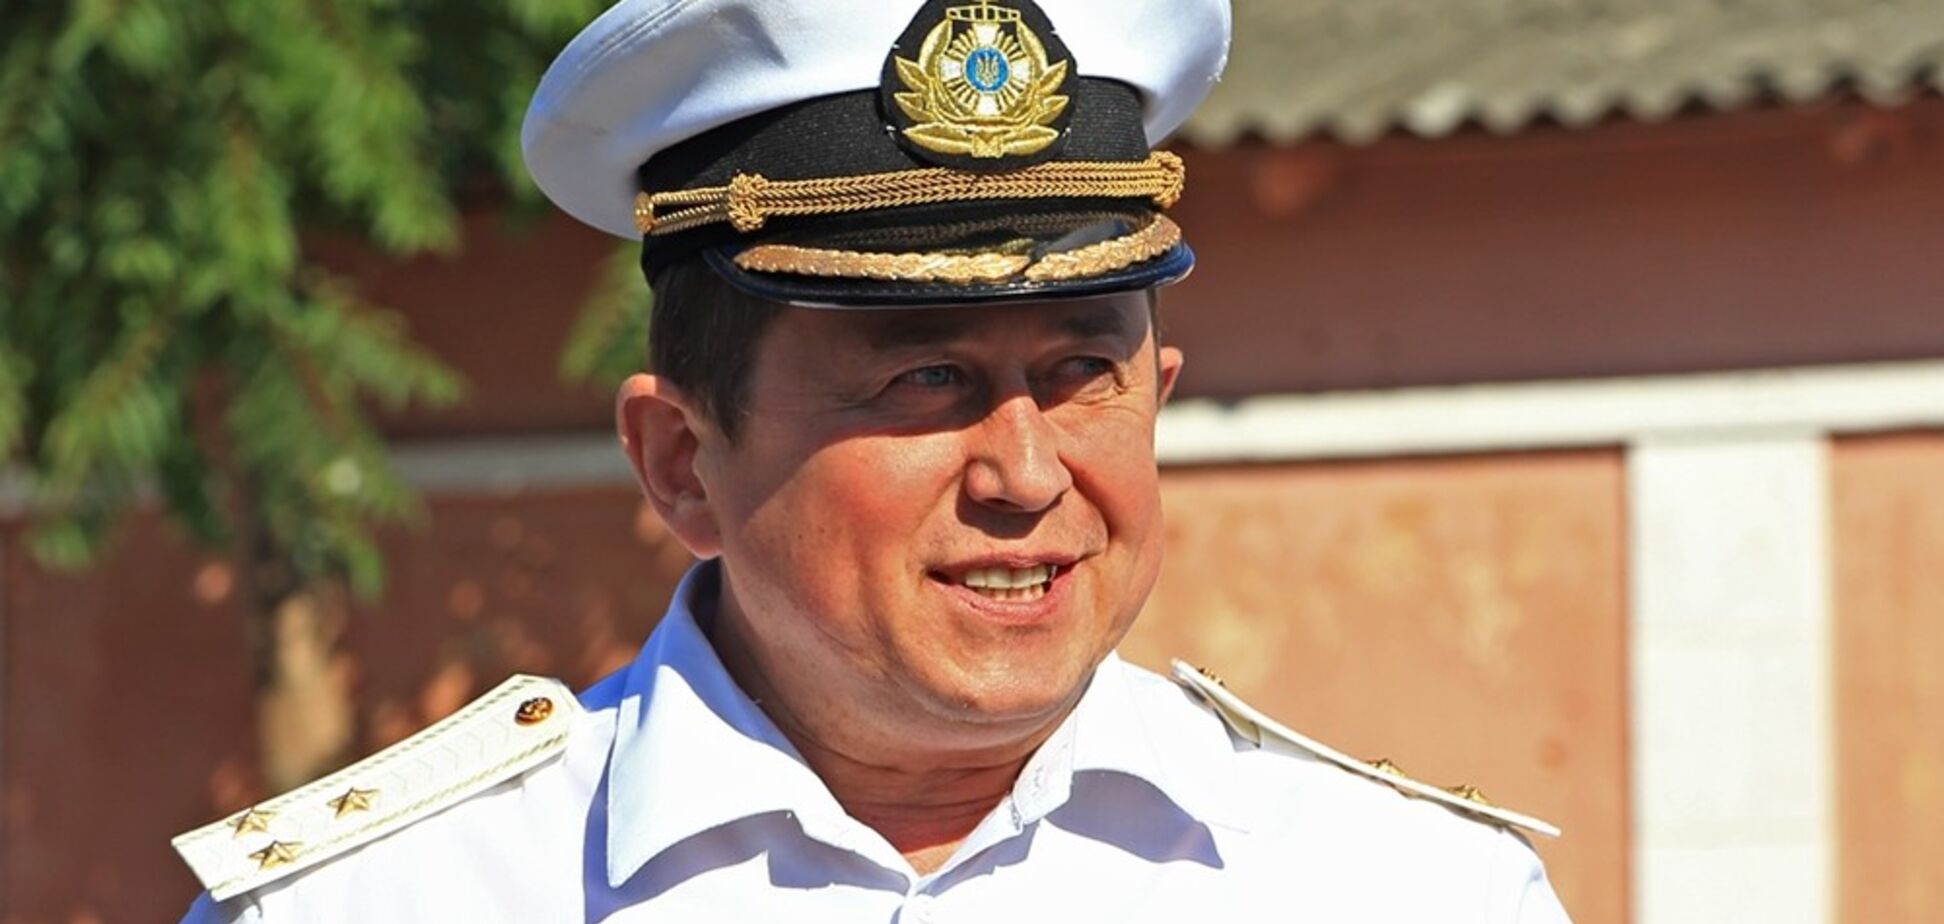 Таран уволил из ВМС капитана, отвечавшего за сотрудничество с НАТО и США